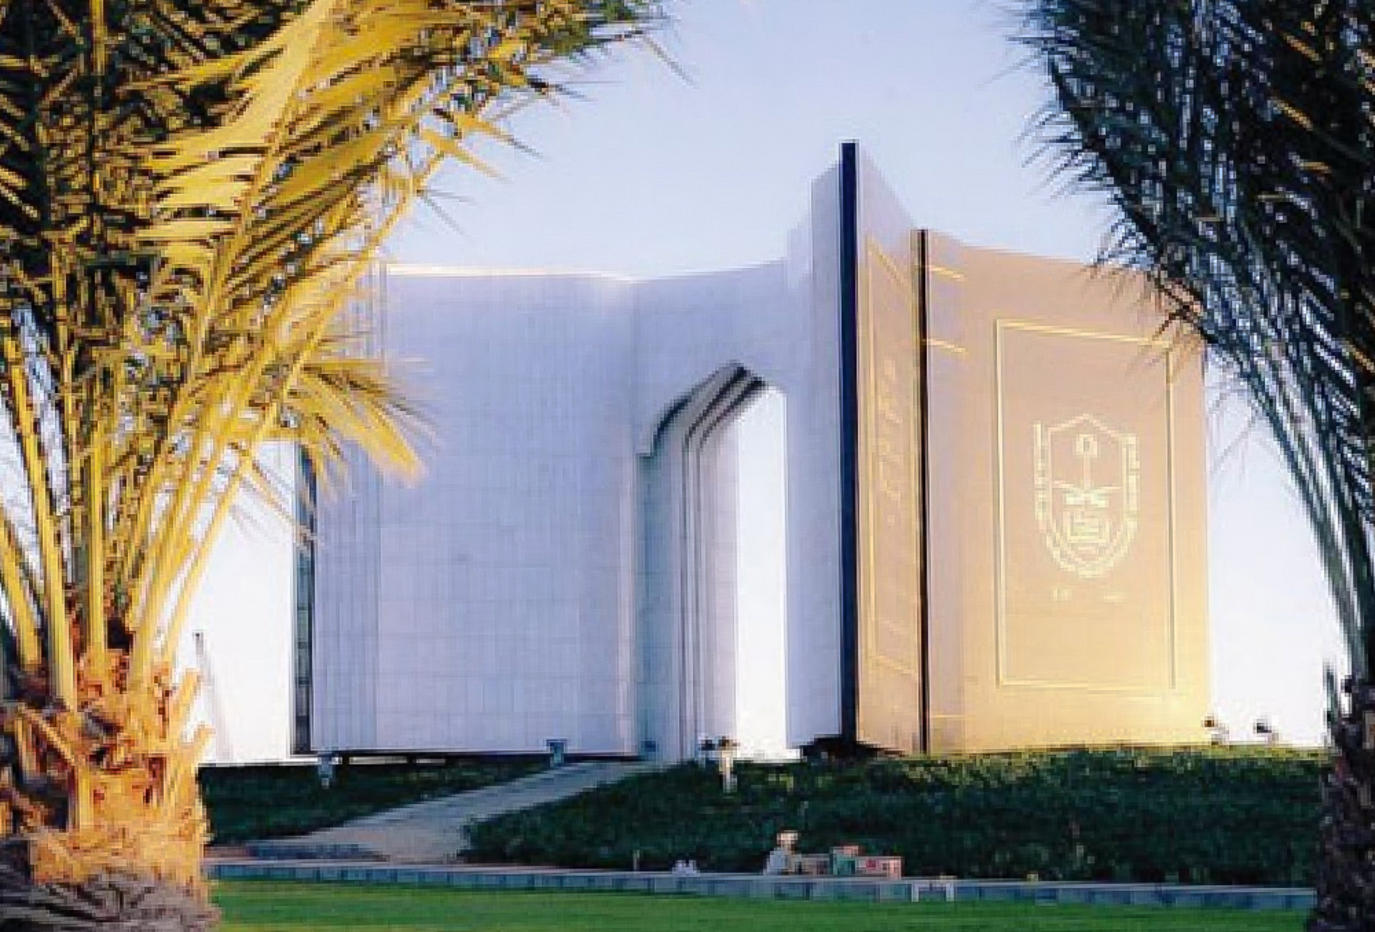 الخدمات الالكترونية جامعة الملك سعود